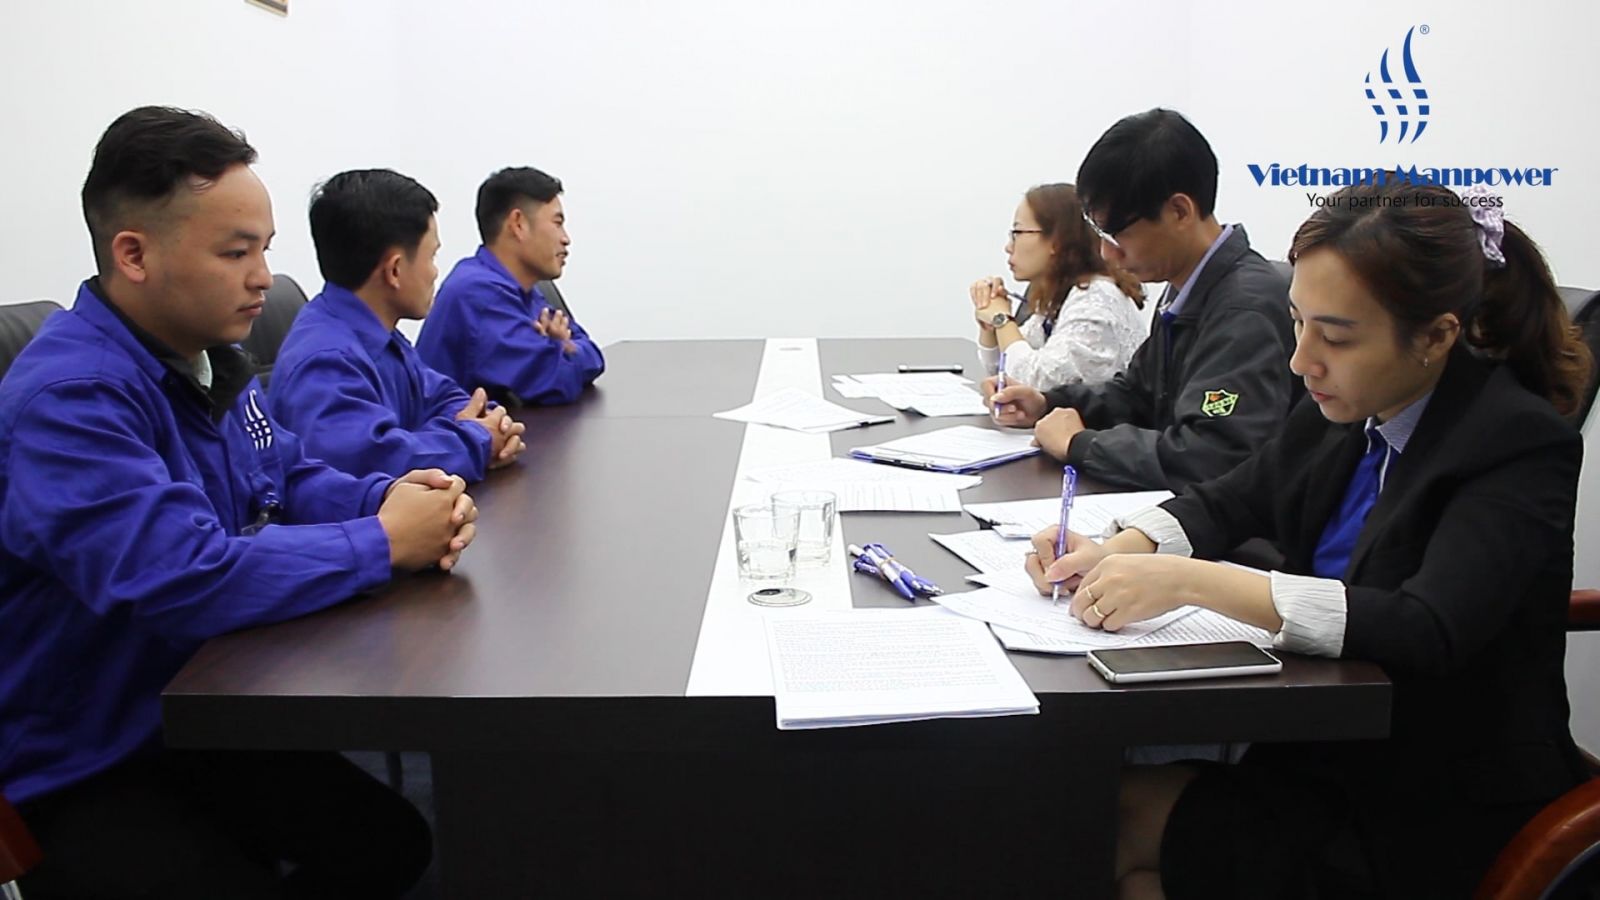 التعاون الثاني للتوظيف بين شركة Vietnam Manpower - LMK Vietnam. و JSC و KORA group، بولندا - وهي شركة رائدة متخصصة في تصنيع السلمون.